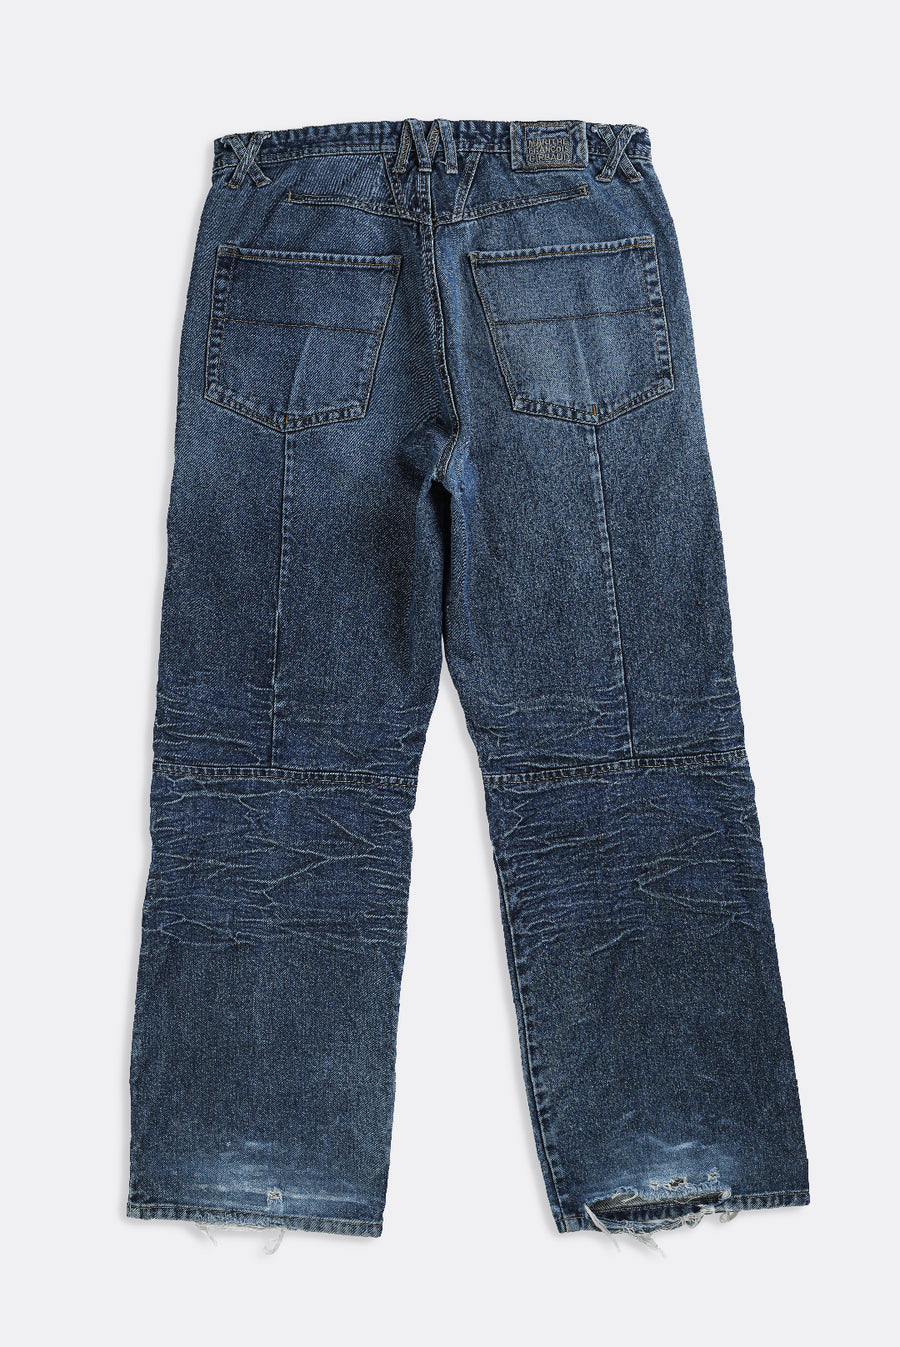 Vintage Girbaud Denim Pants - W37